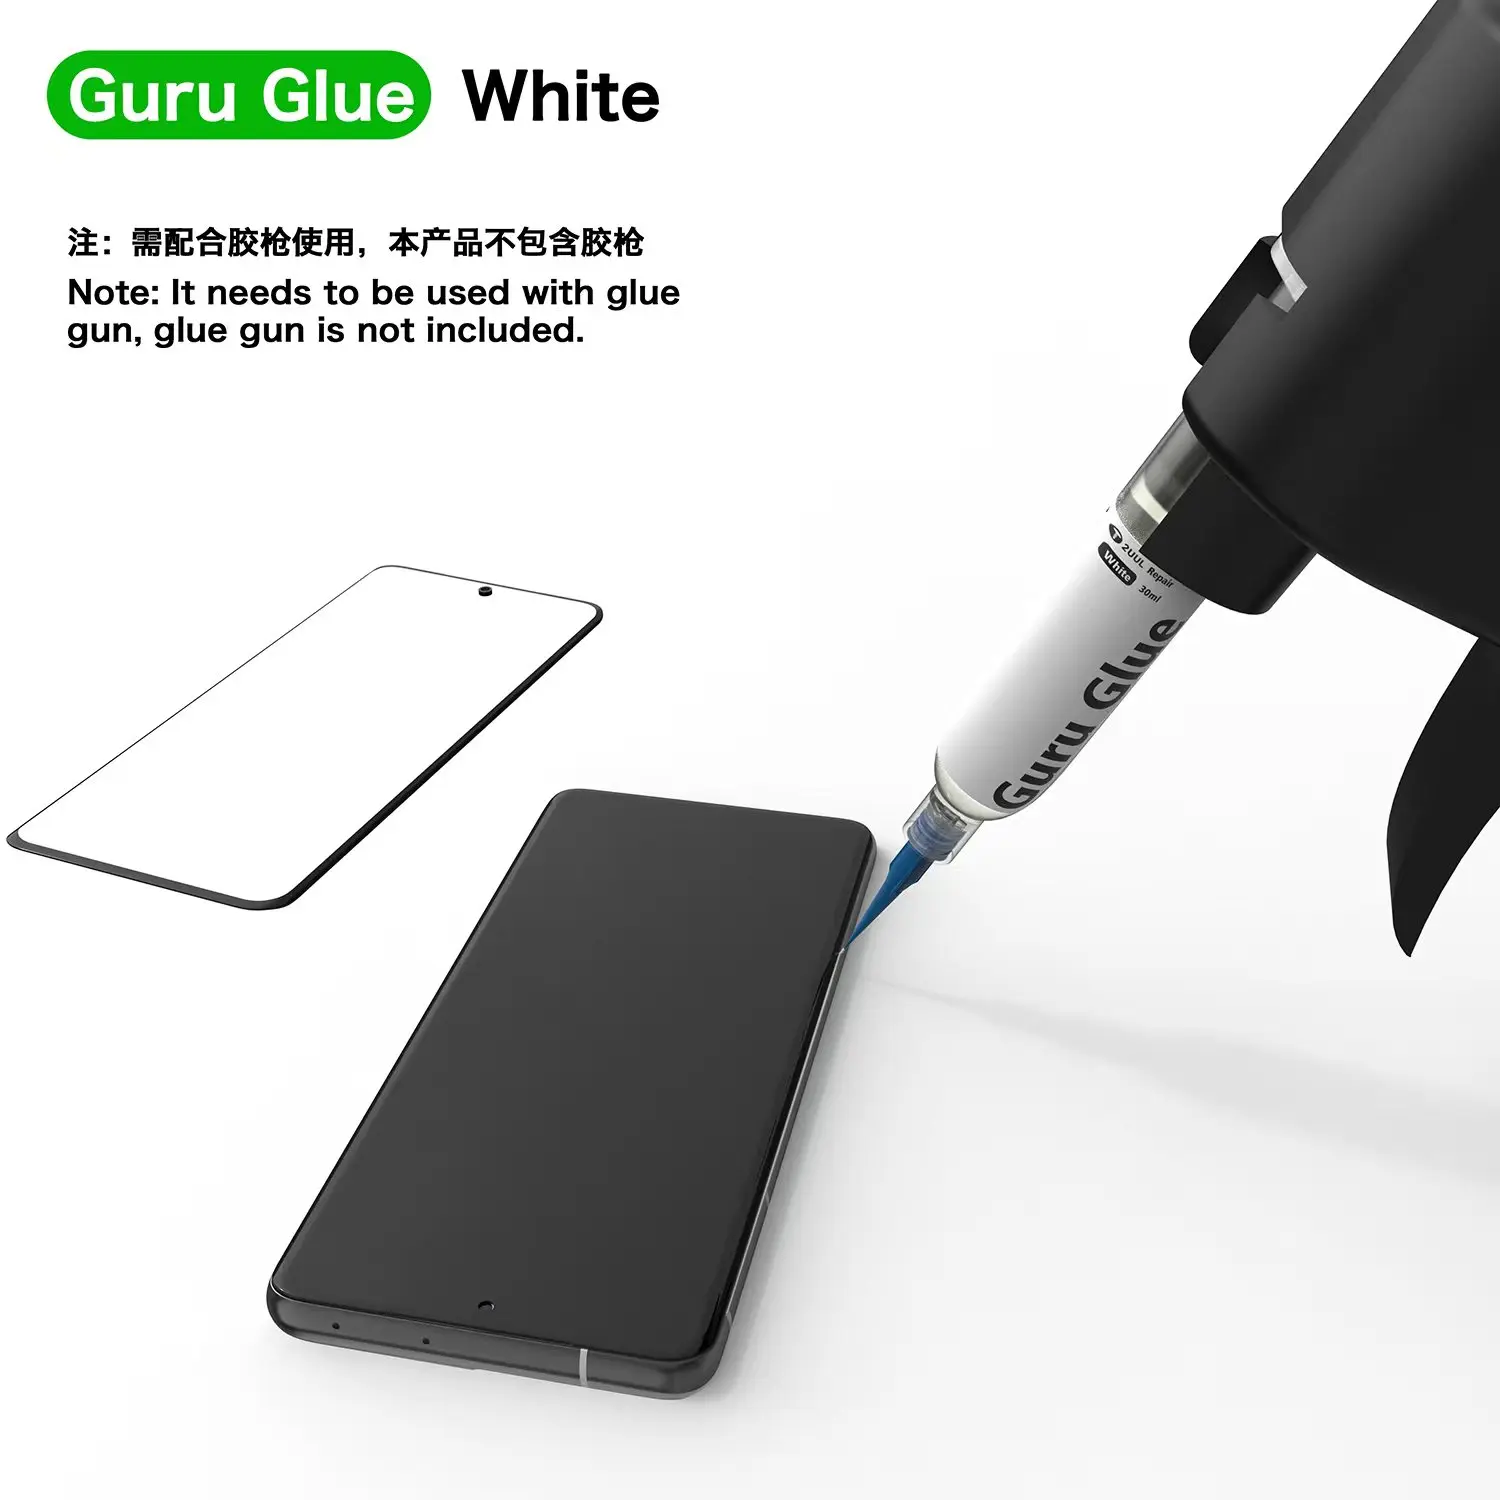 Ljepilo 2UUL Guru / Soft tampon ljepilo za popravke telefona 30 ml (crno-bijelo) / Ljepilo za mobilne uređaje / Ljepilo za popravke mobilnih LCD zaslona Slika 5